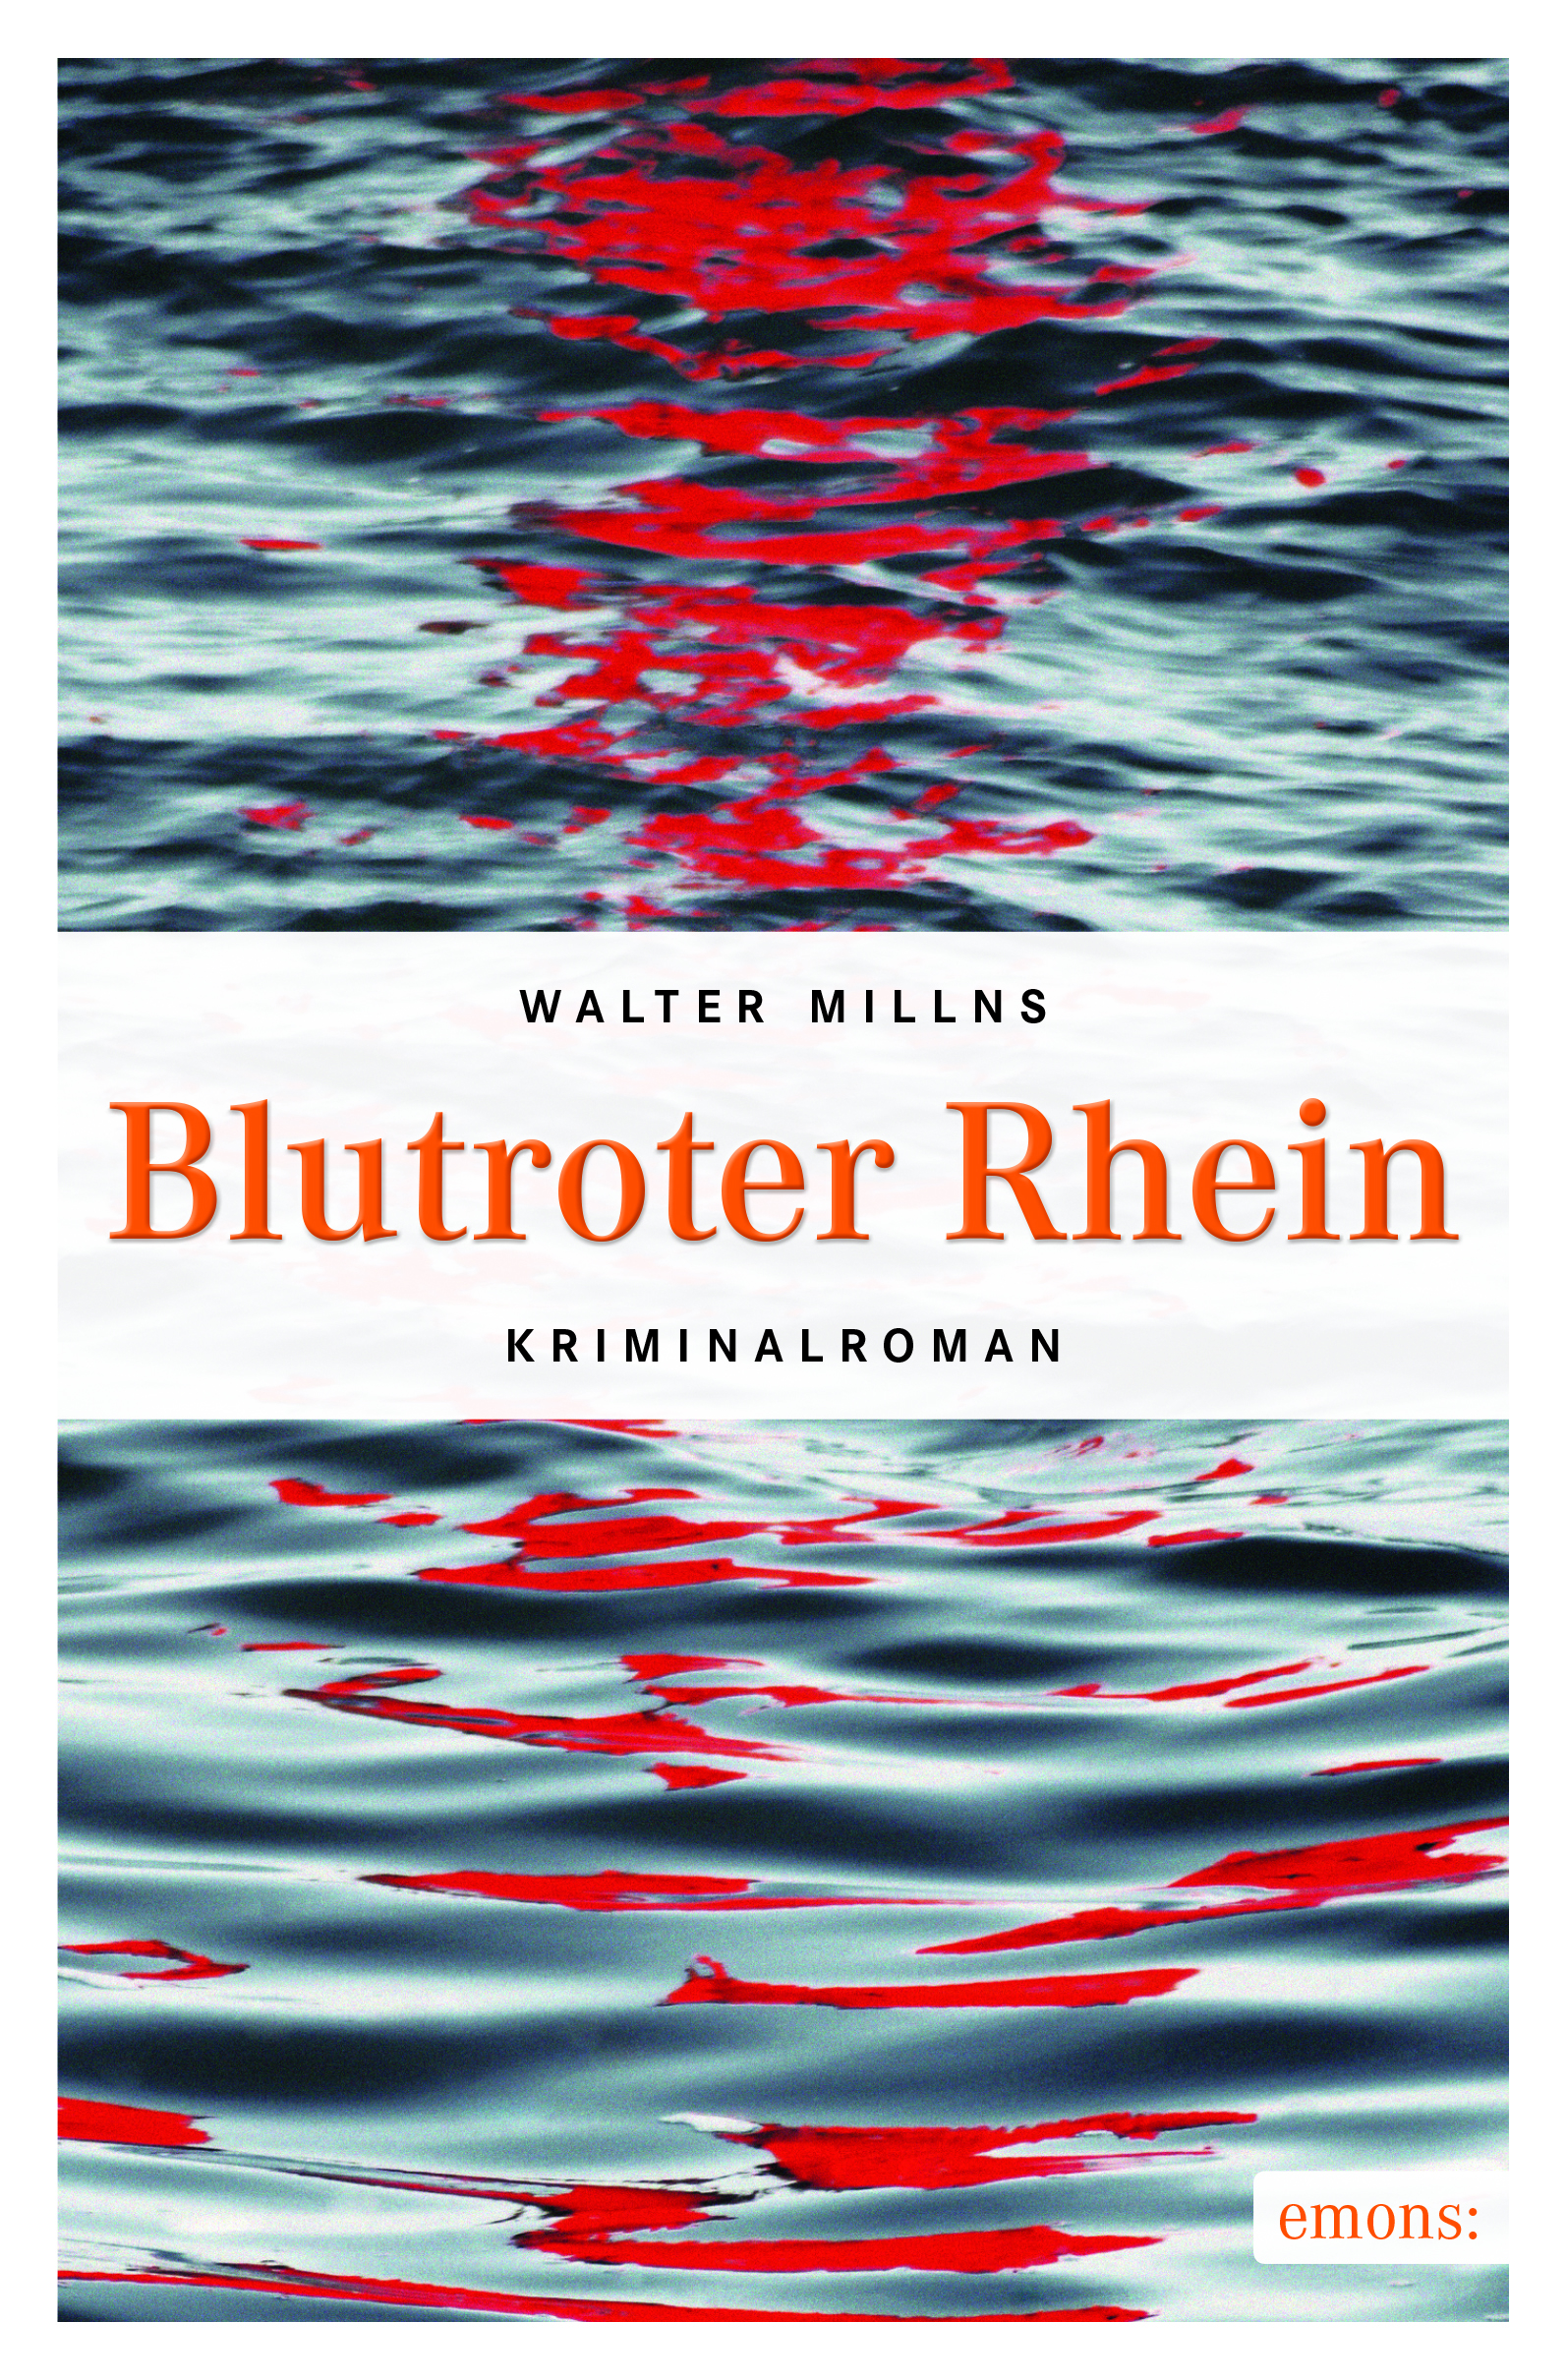 (i4)_(0196-0)_Millns_Blutroter_Rhein_VS_01